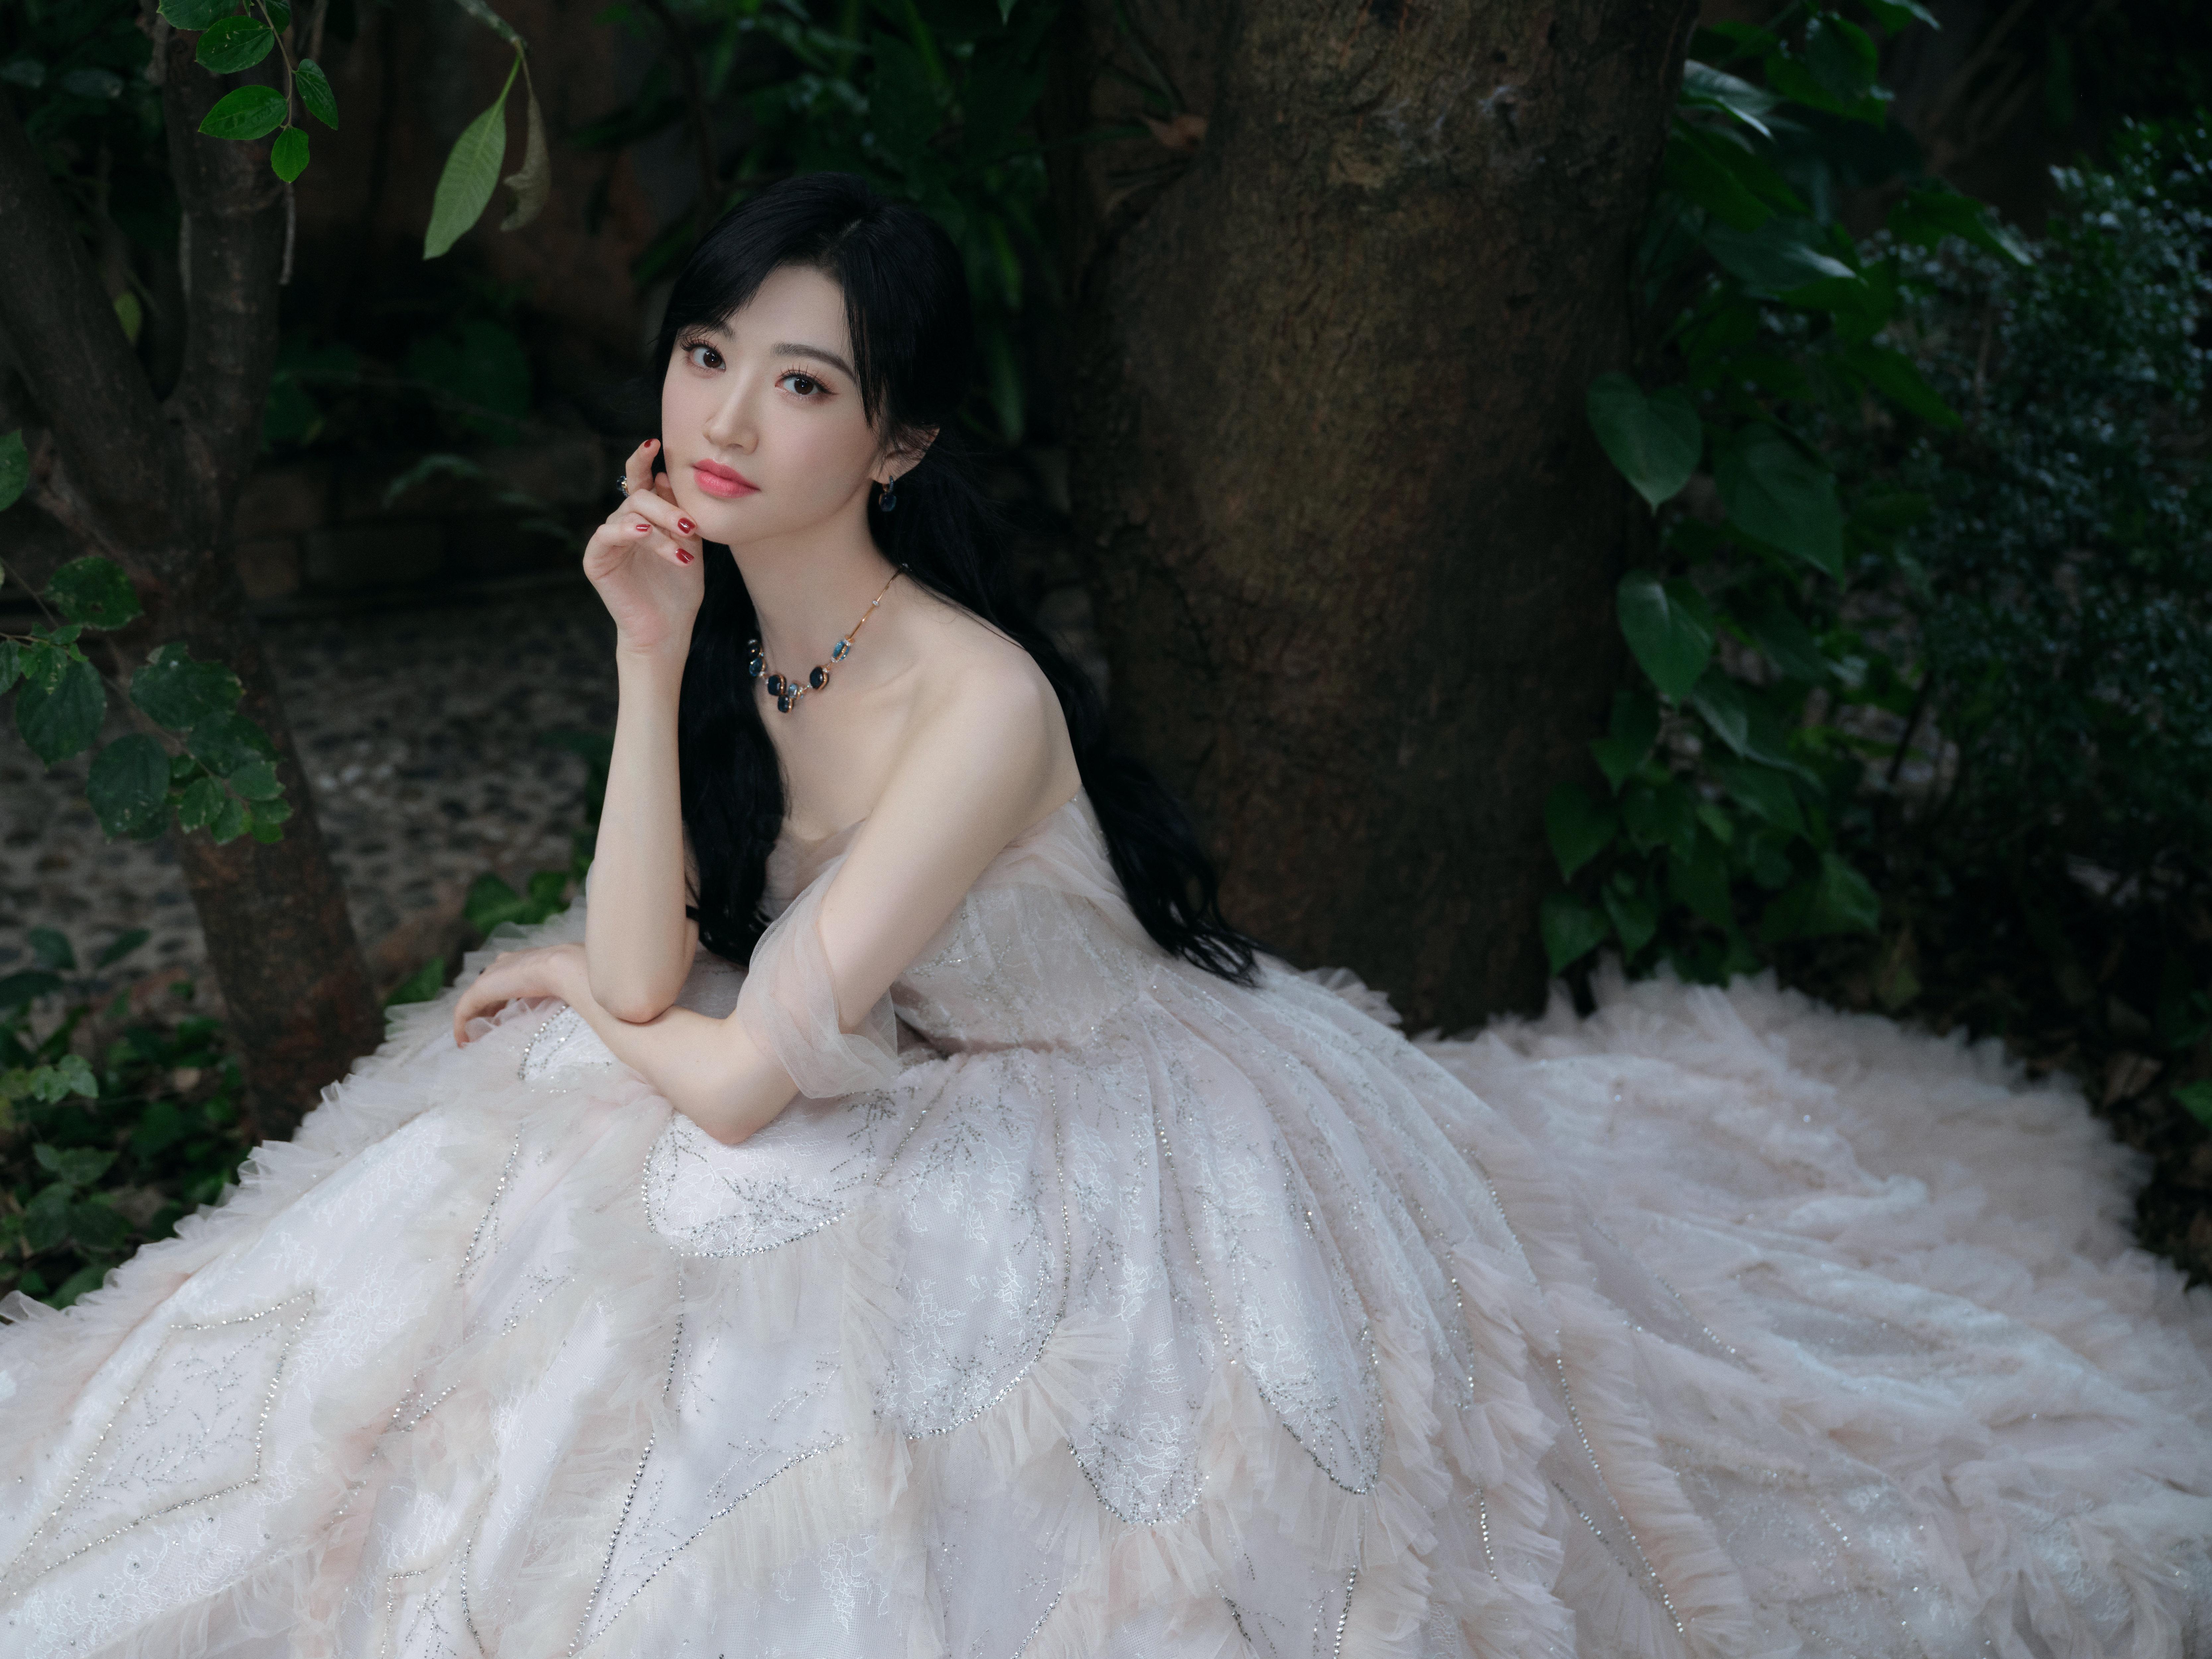 甜美公主范 景甜穿白色蓬蓬裙清新怡人,2 (1)